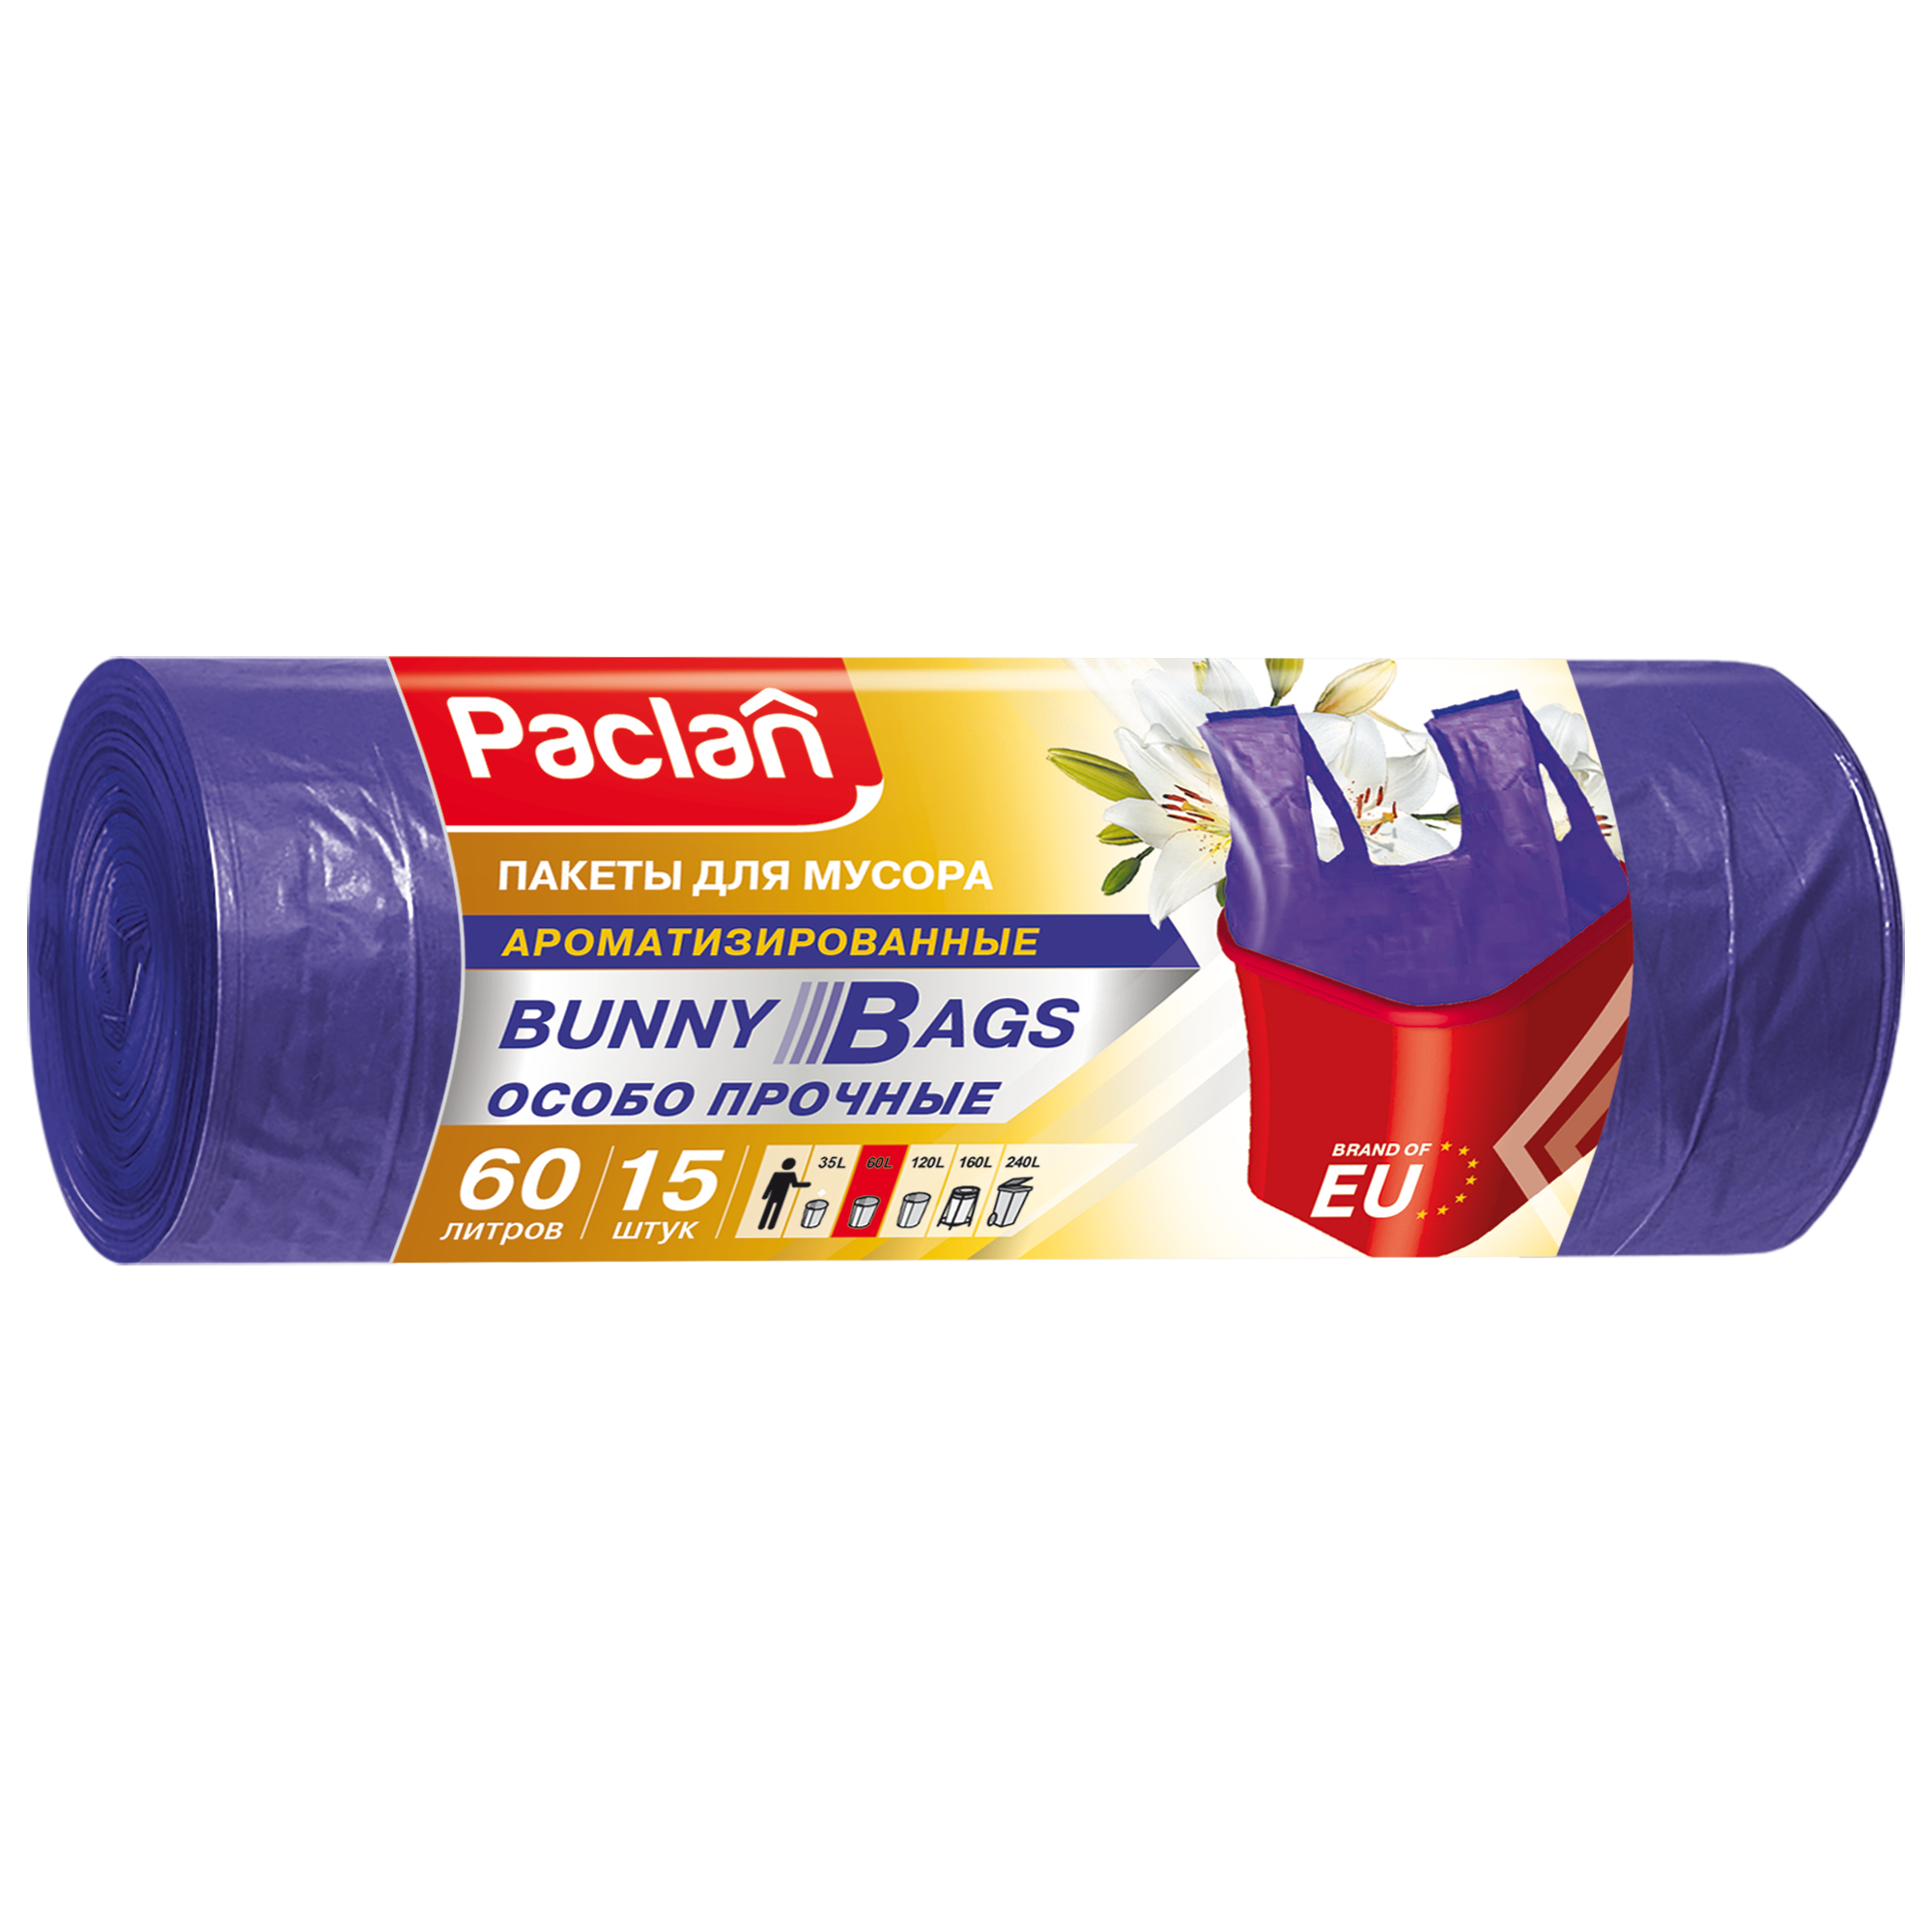 Мешки для мусора Paclan Bunny bags aroma 60 л 15 шт мешки мусорные просто чисто особопрочные 4096